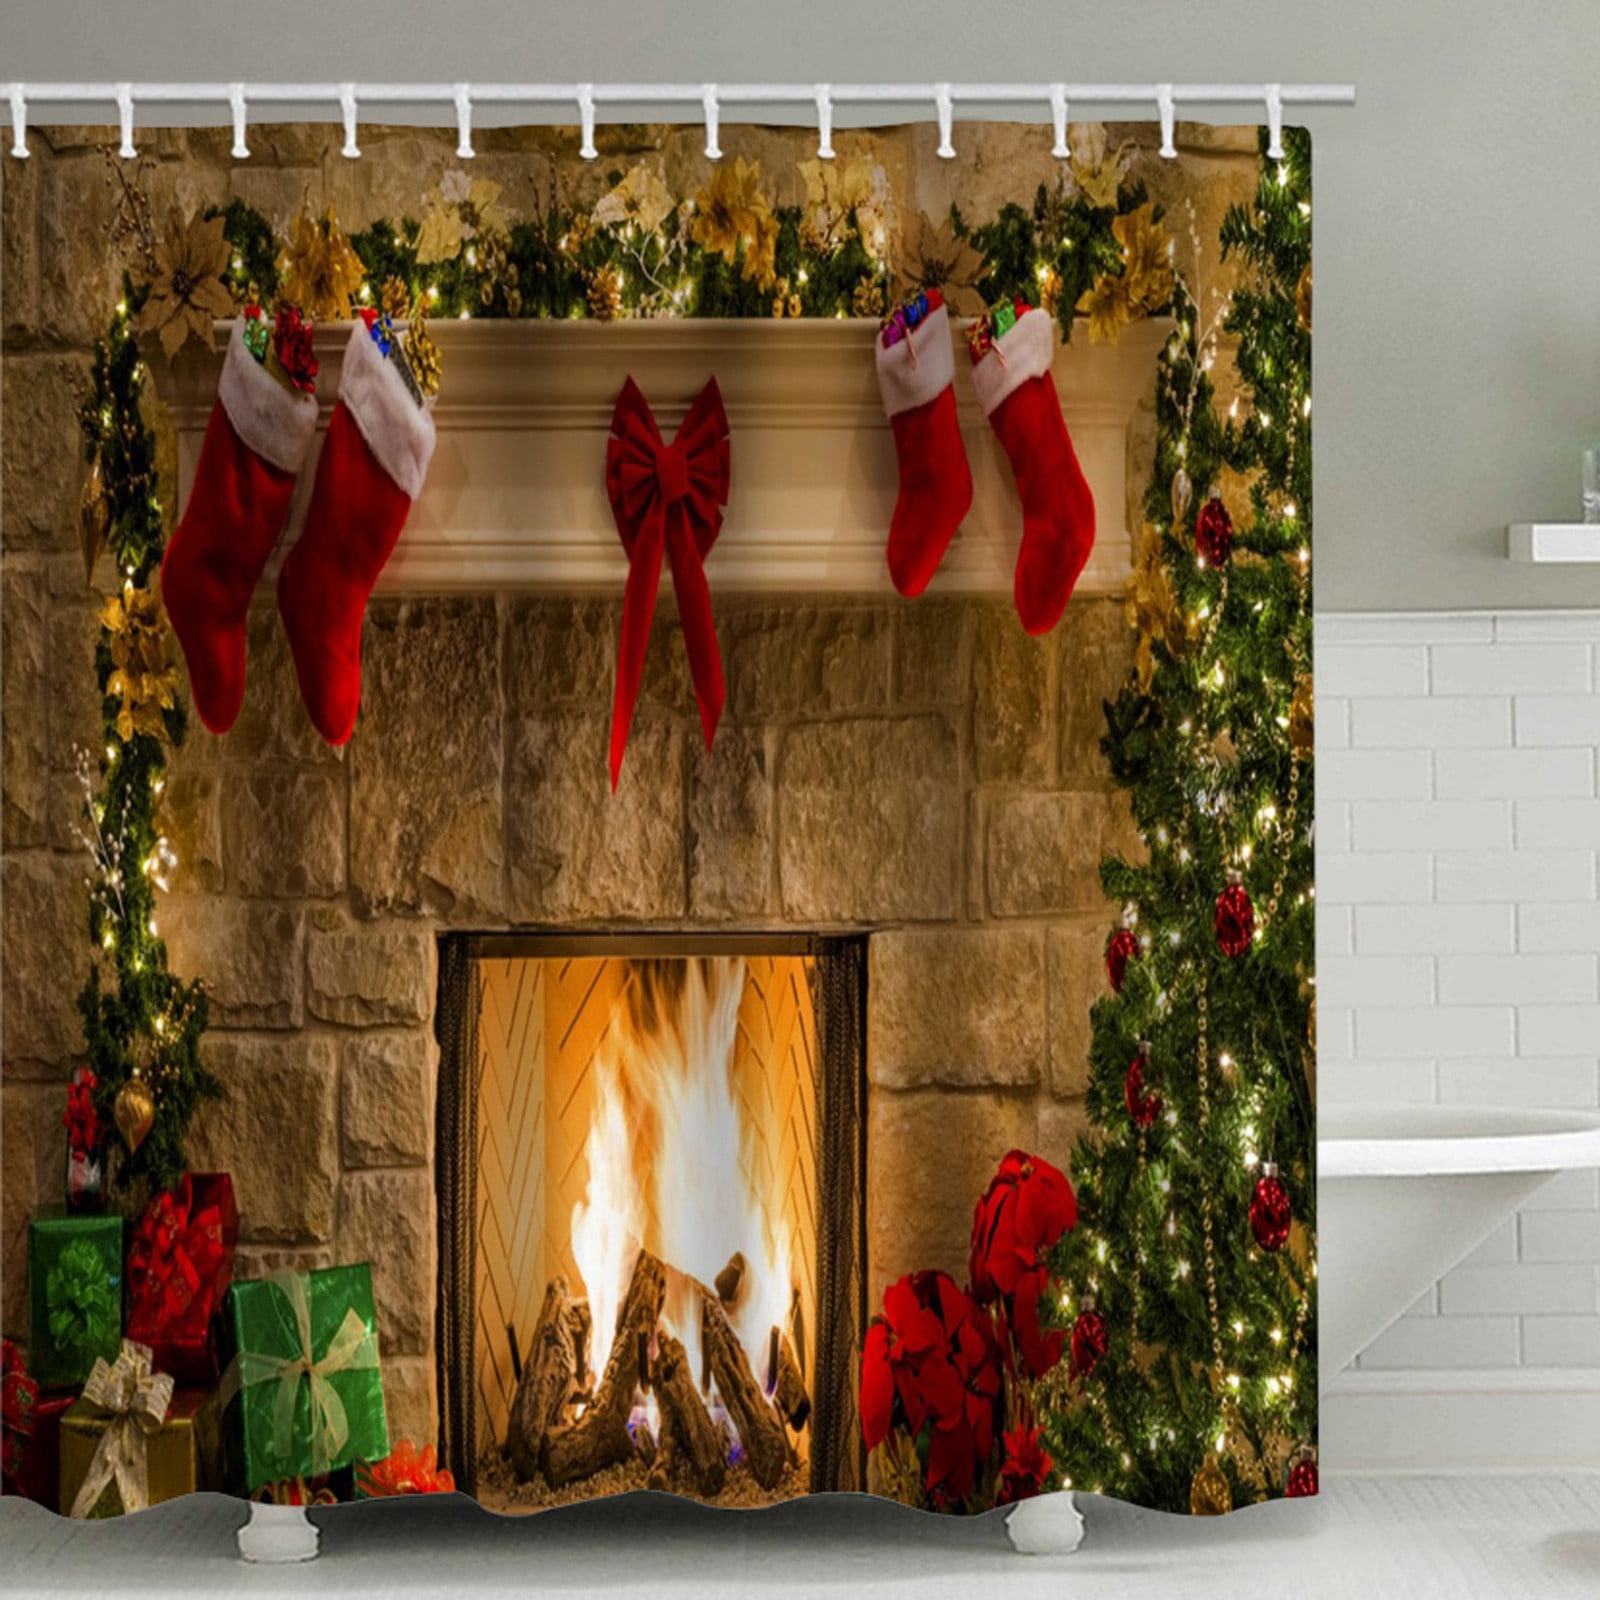 WSBDENLK Christmas Decorations Clearance Christmas Shower Curtain ...